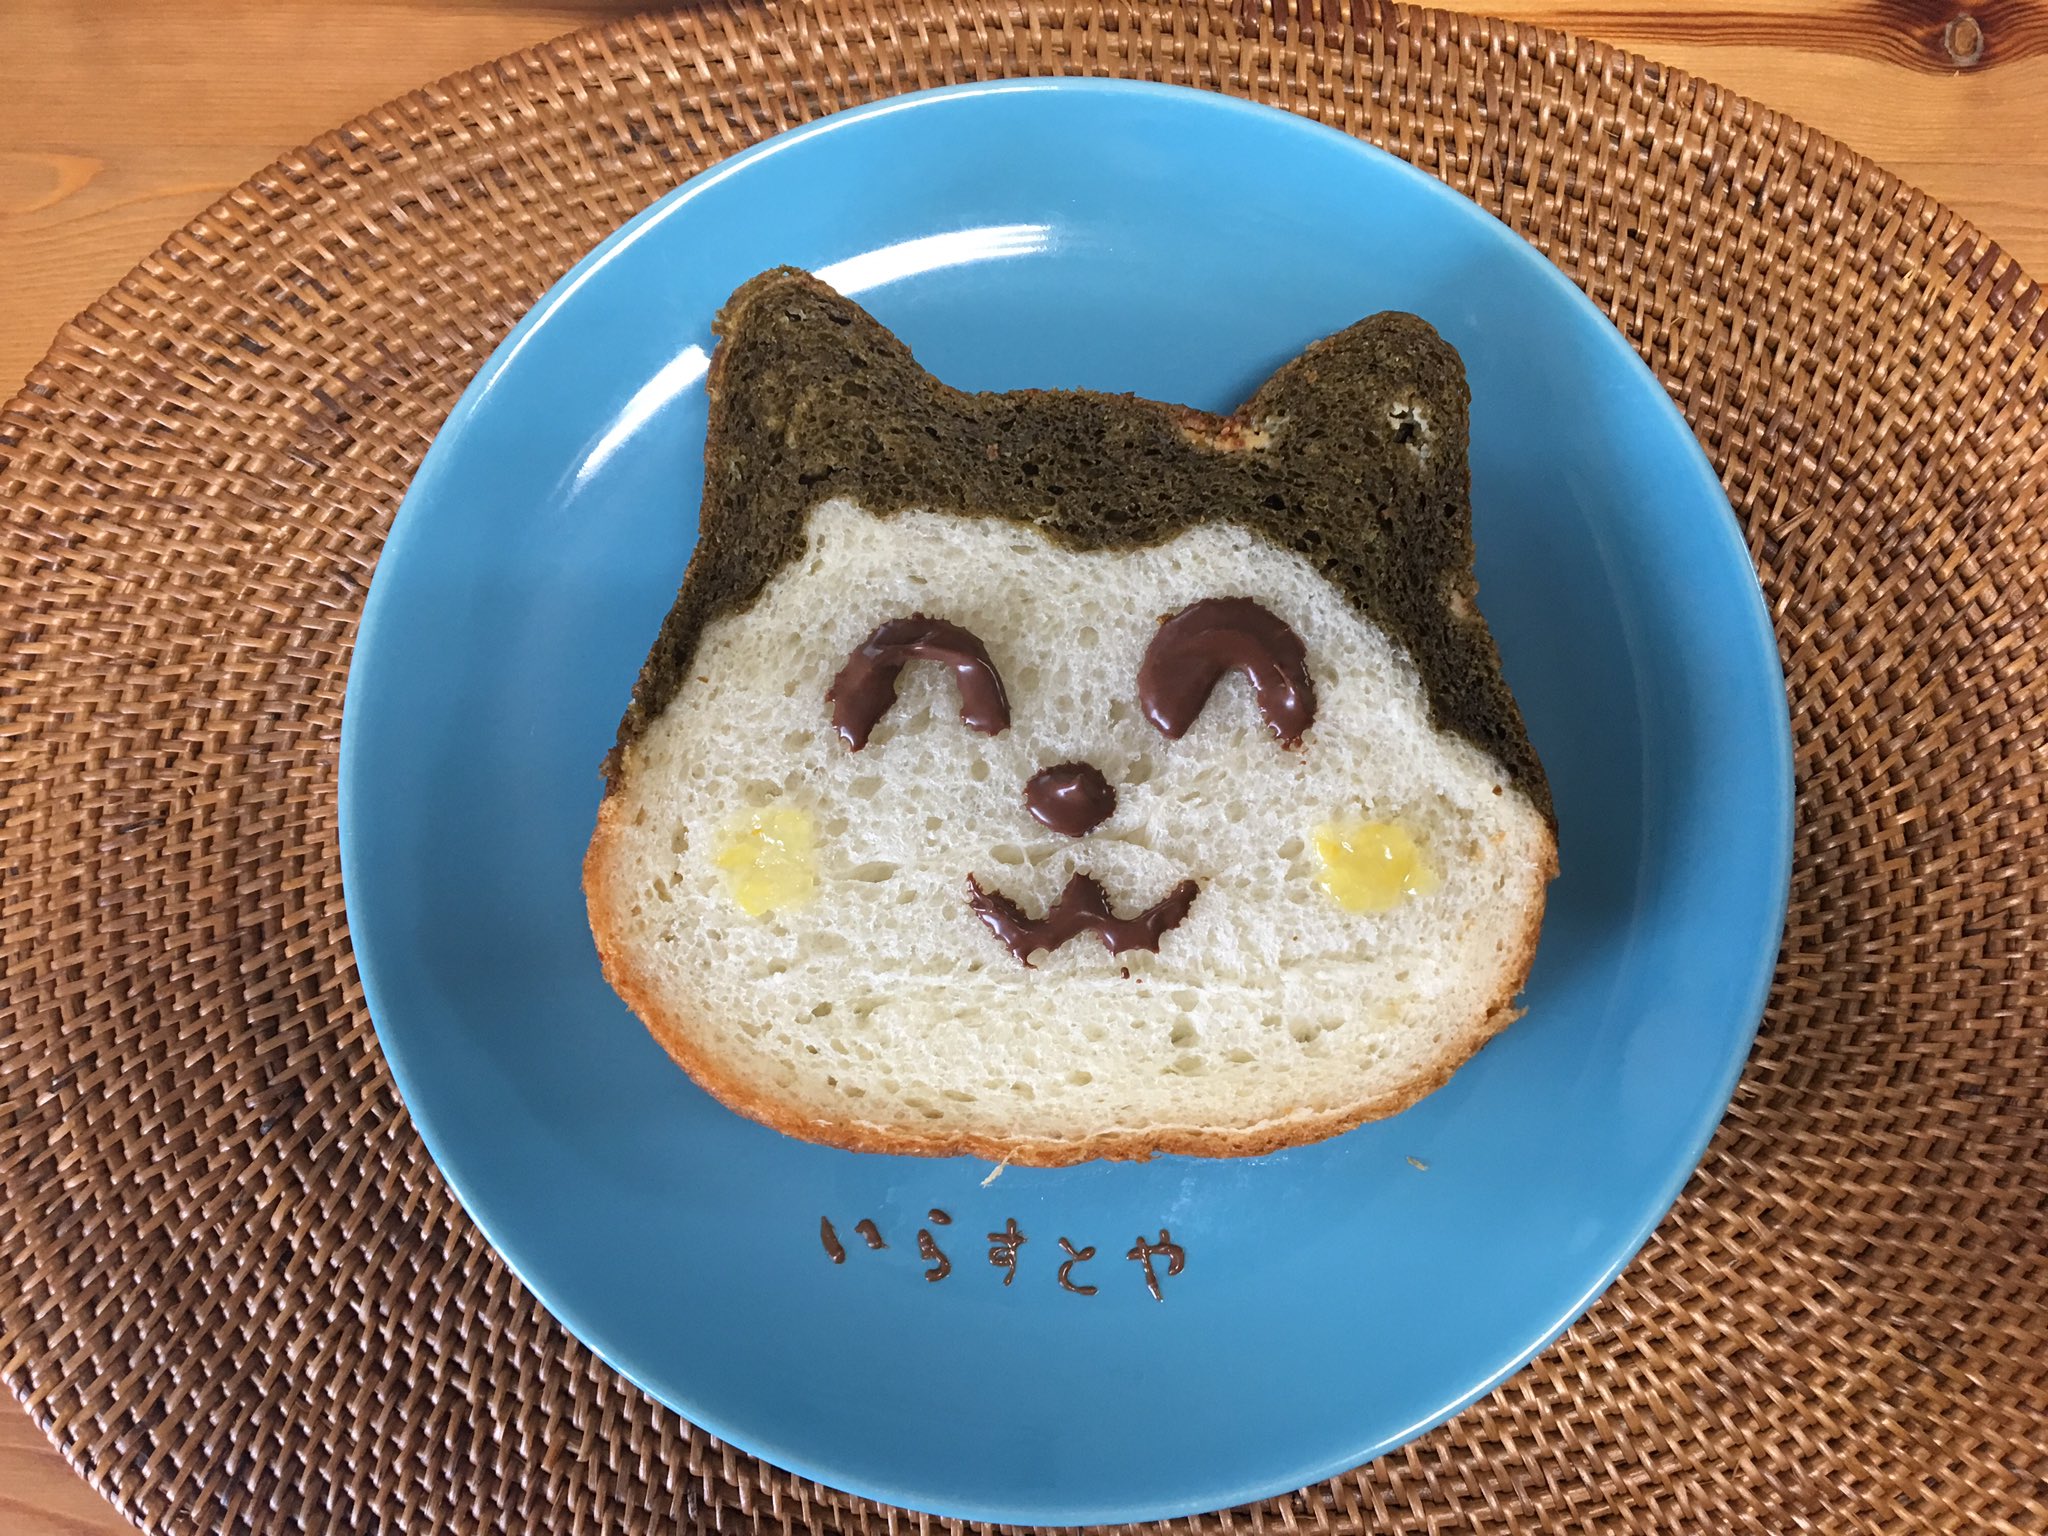 ぽっくる ゆるフリーランス 見て 大好きないらすとやさん Irasutoya のネコ食パンつくったよ かわいい ネコ型の食パンもらったから食べようとしたら もうアイツにしか見えなくて思わず顔を描いた T Co 3ikrgbyiov Twitter